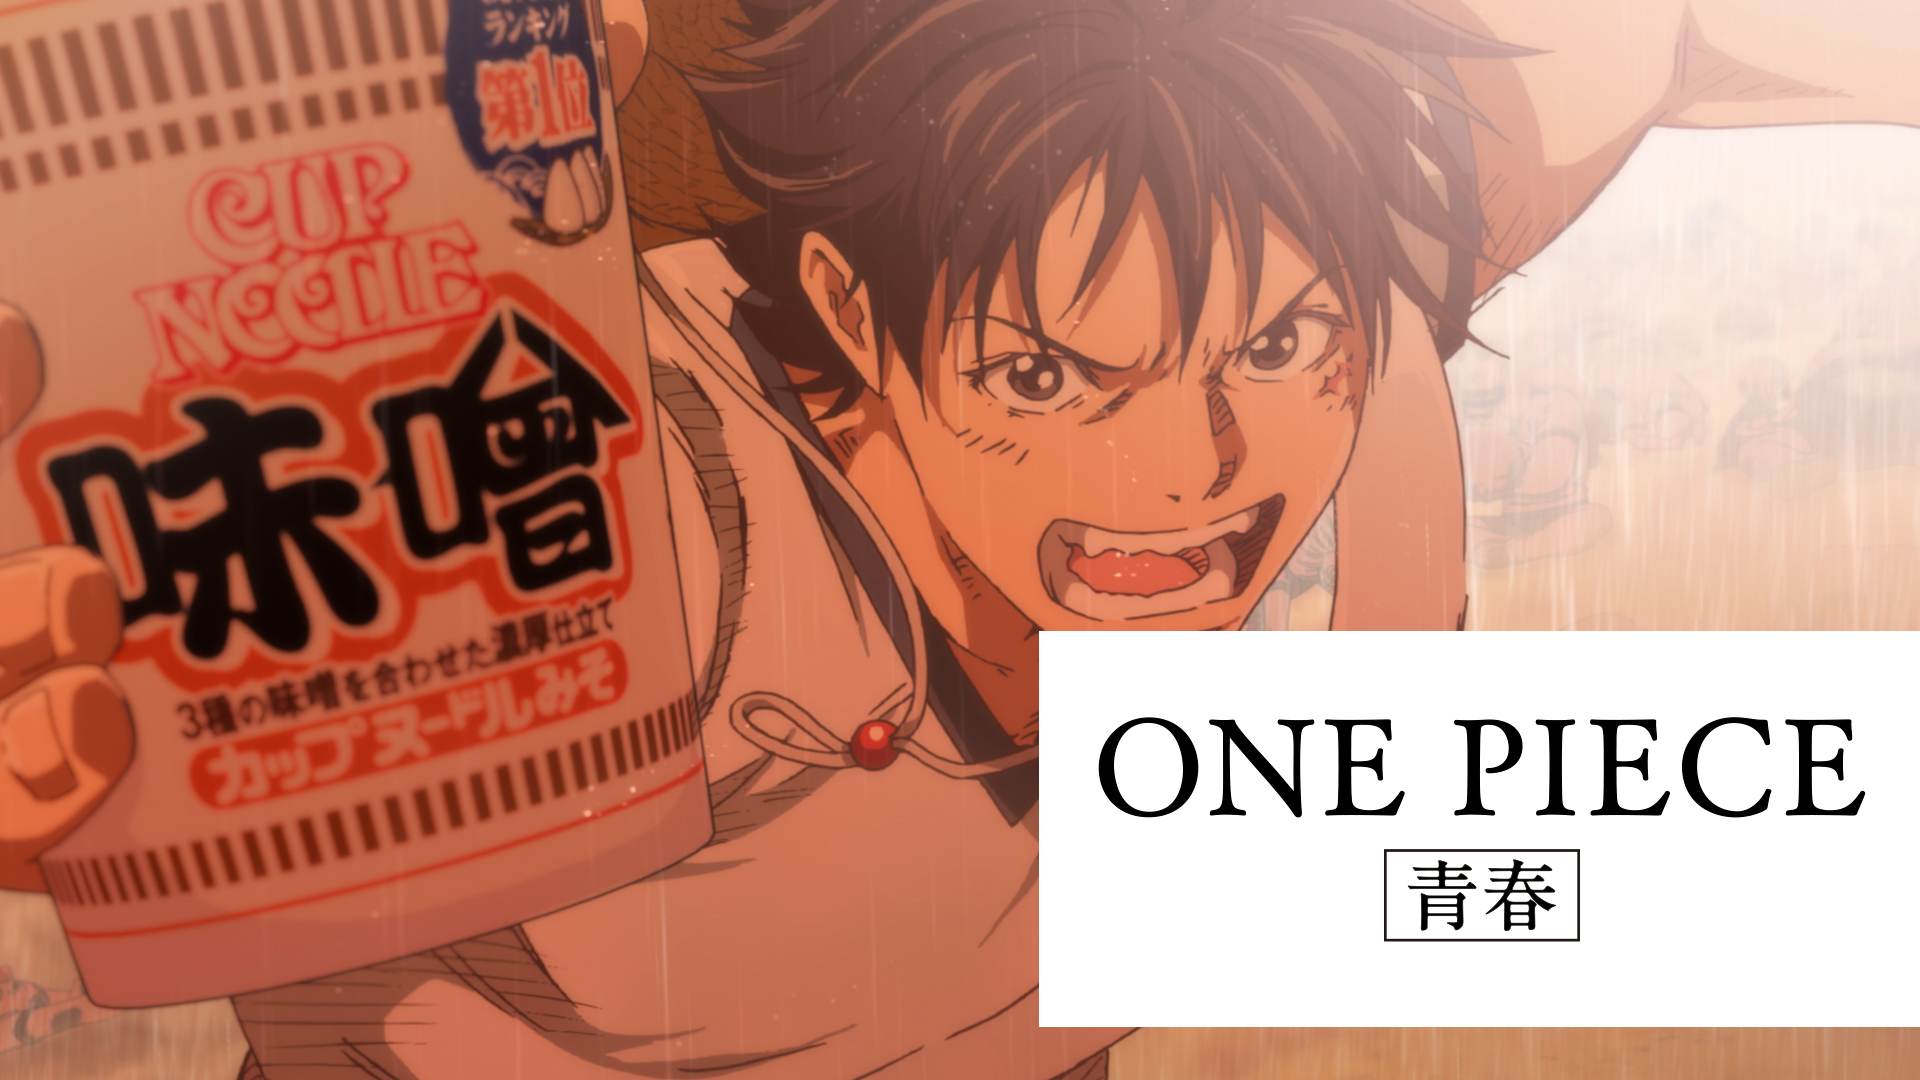 nami daily 🍊 on X: Anime : One Piece  / X